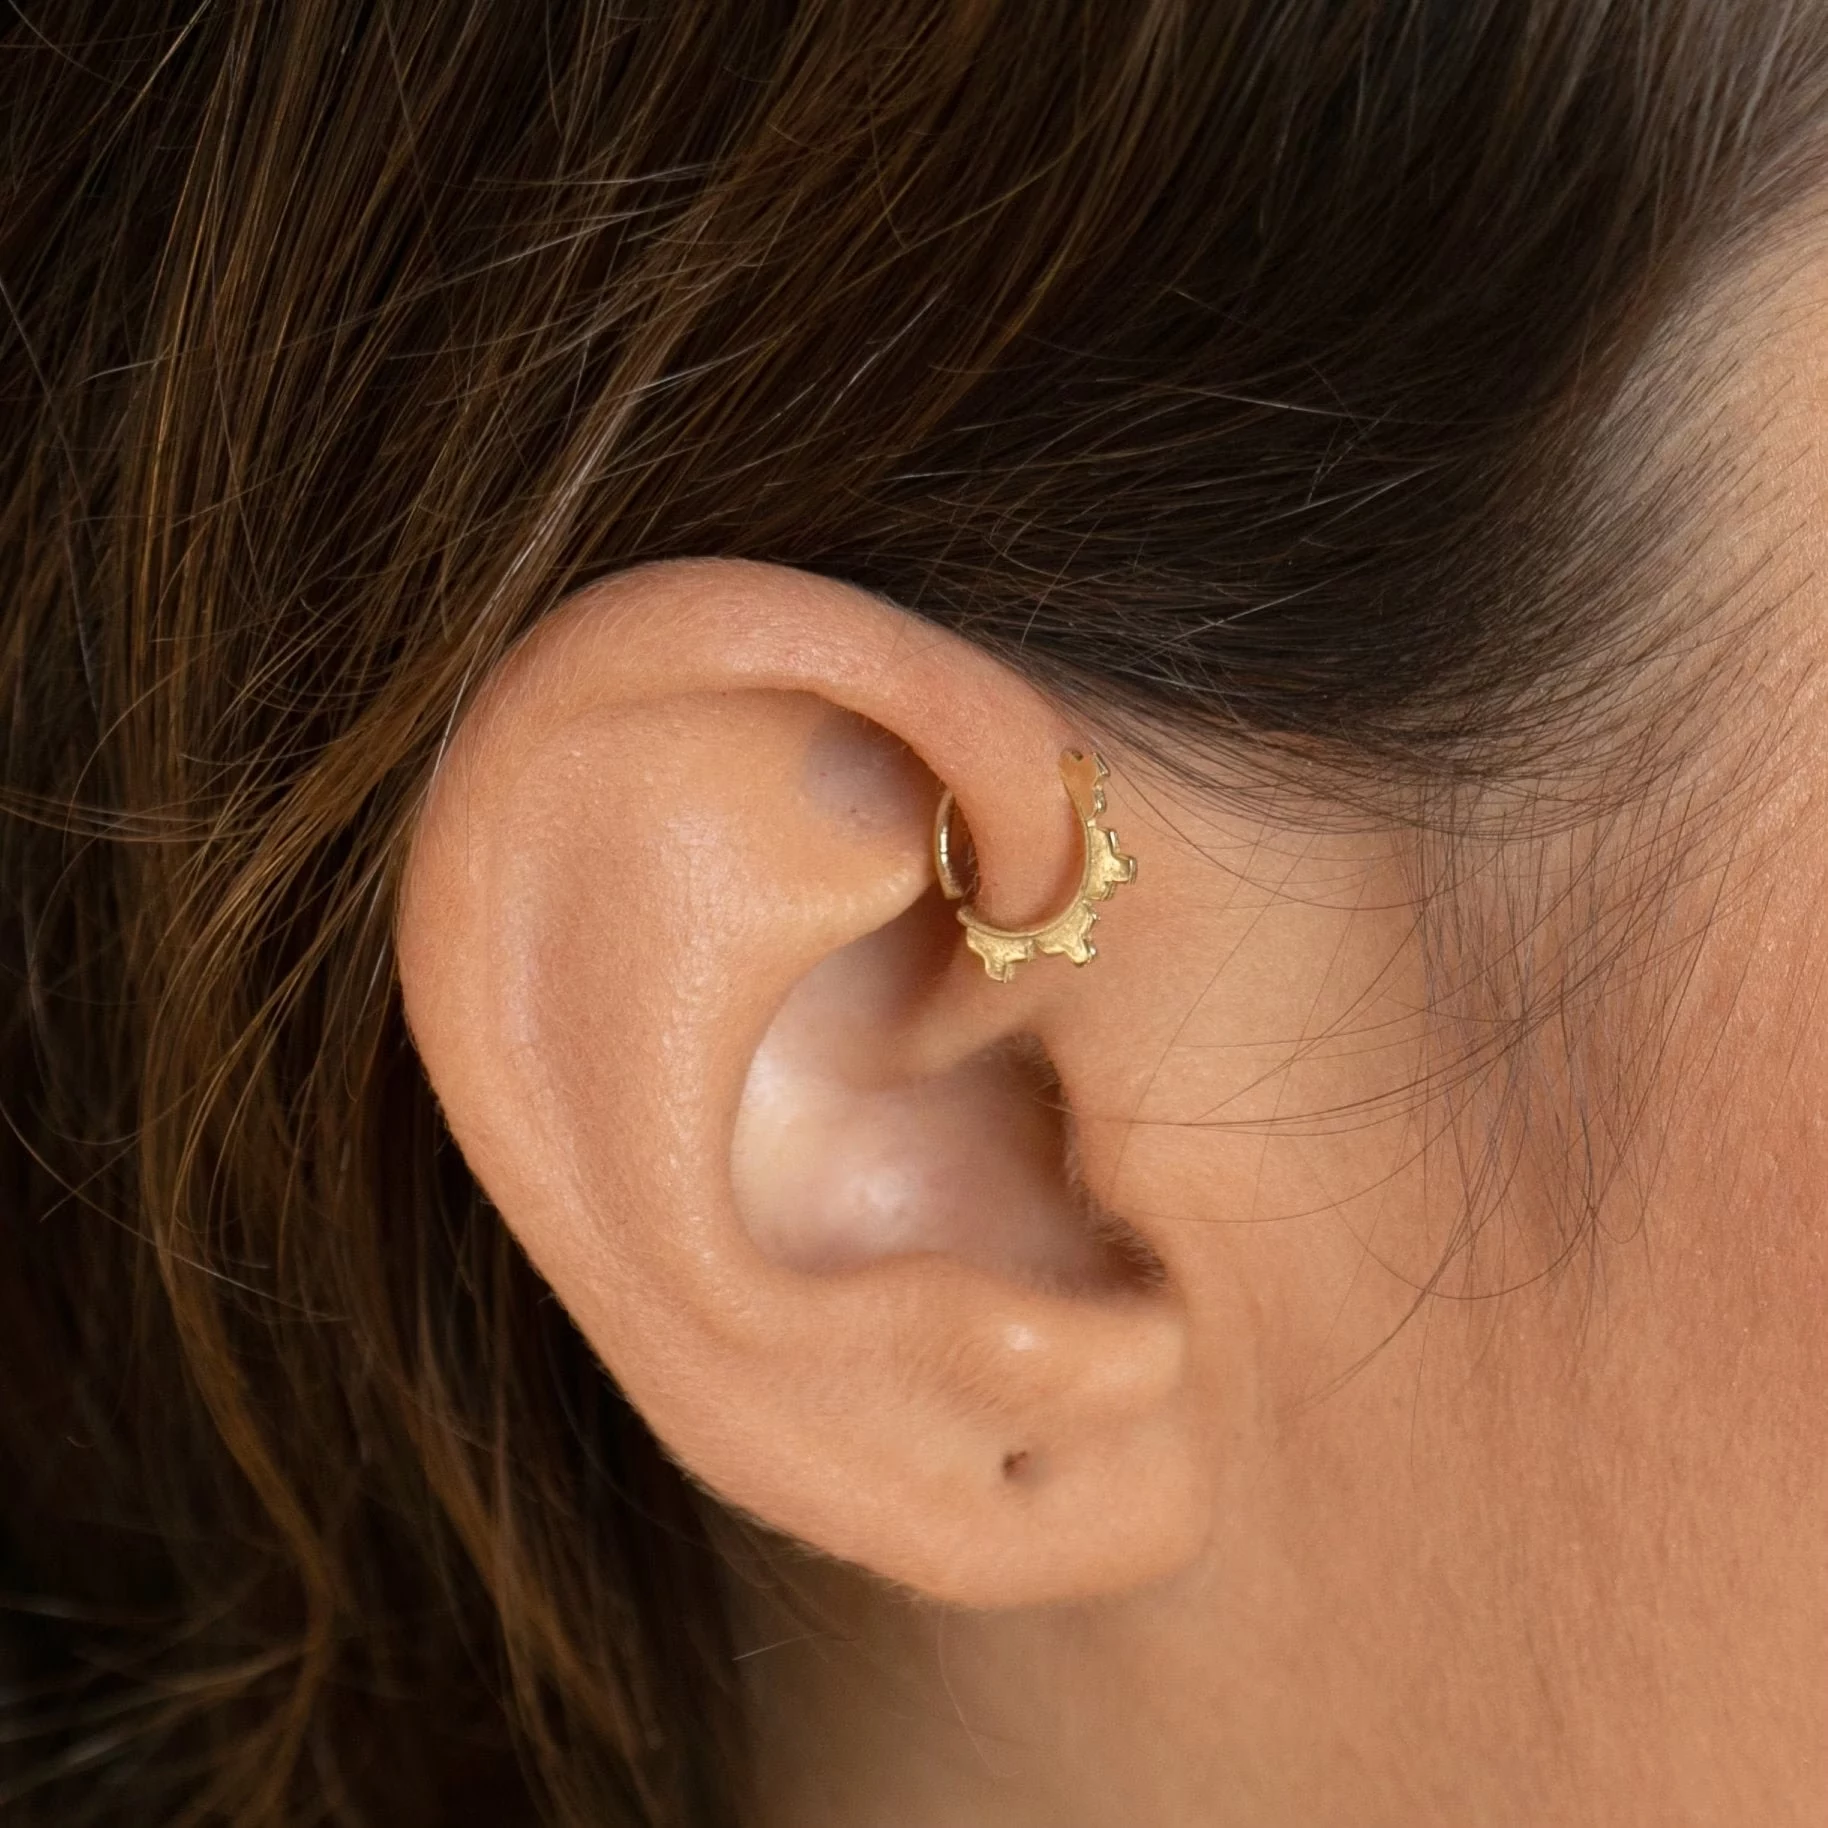 ear piercings forward helix